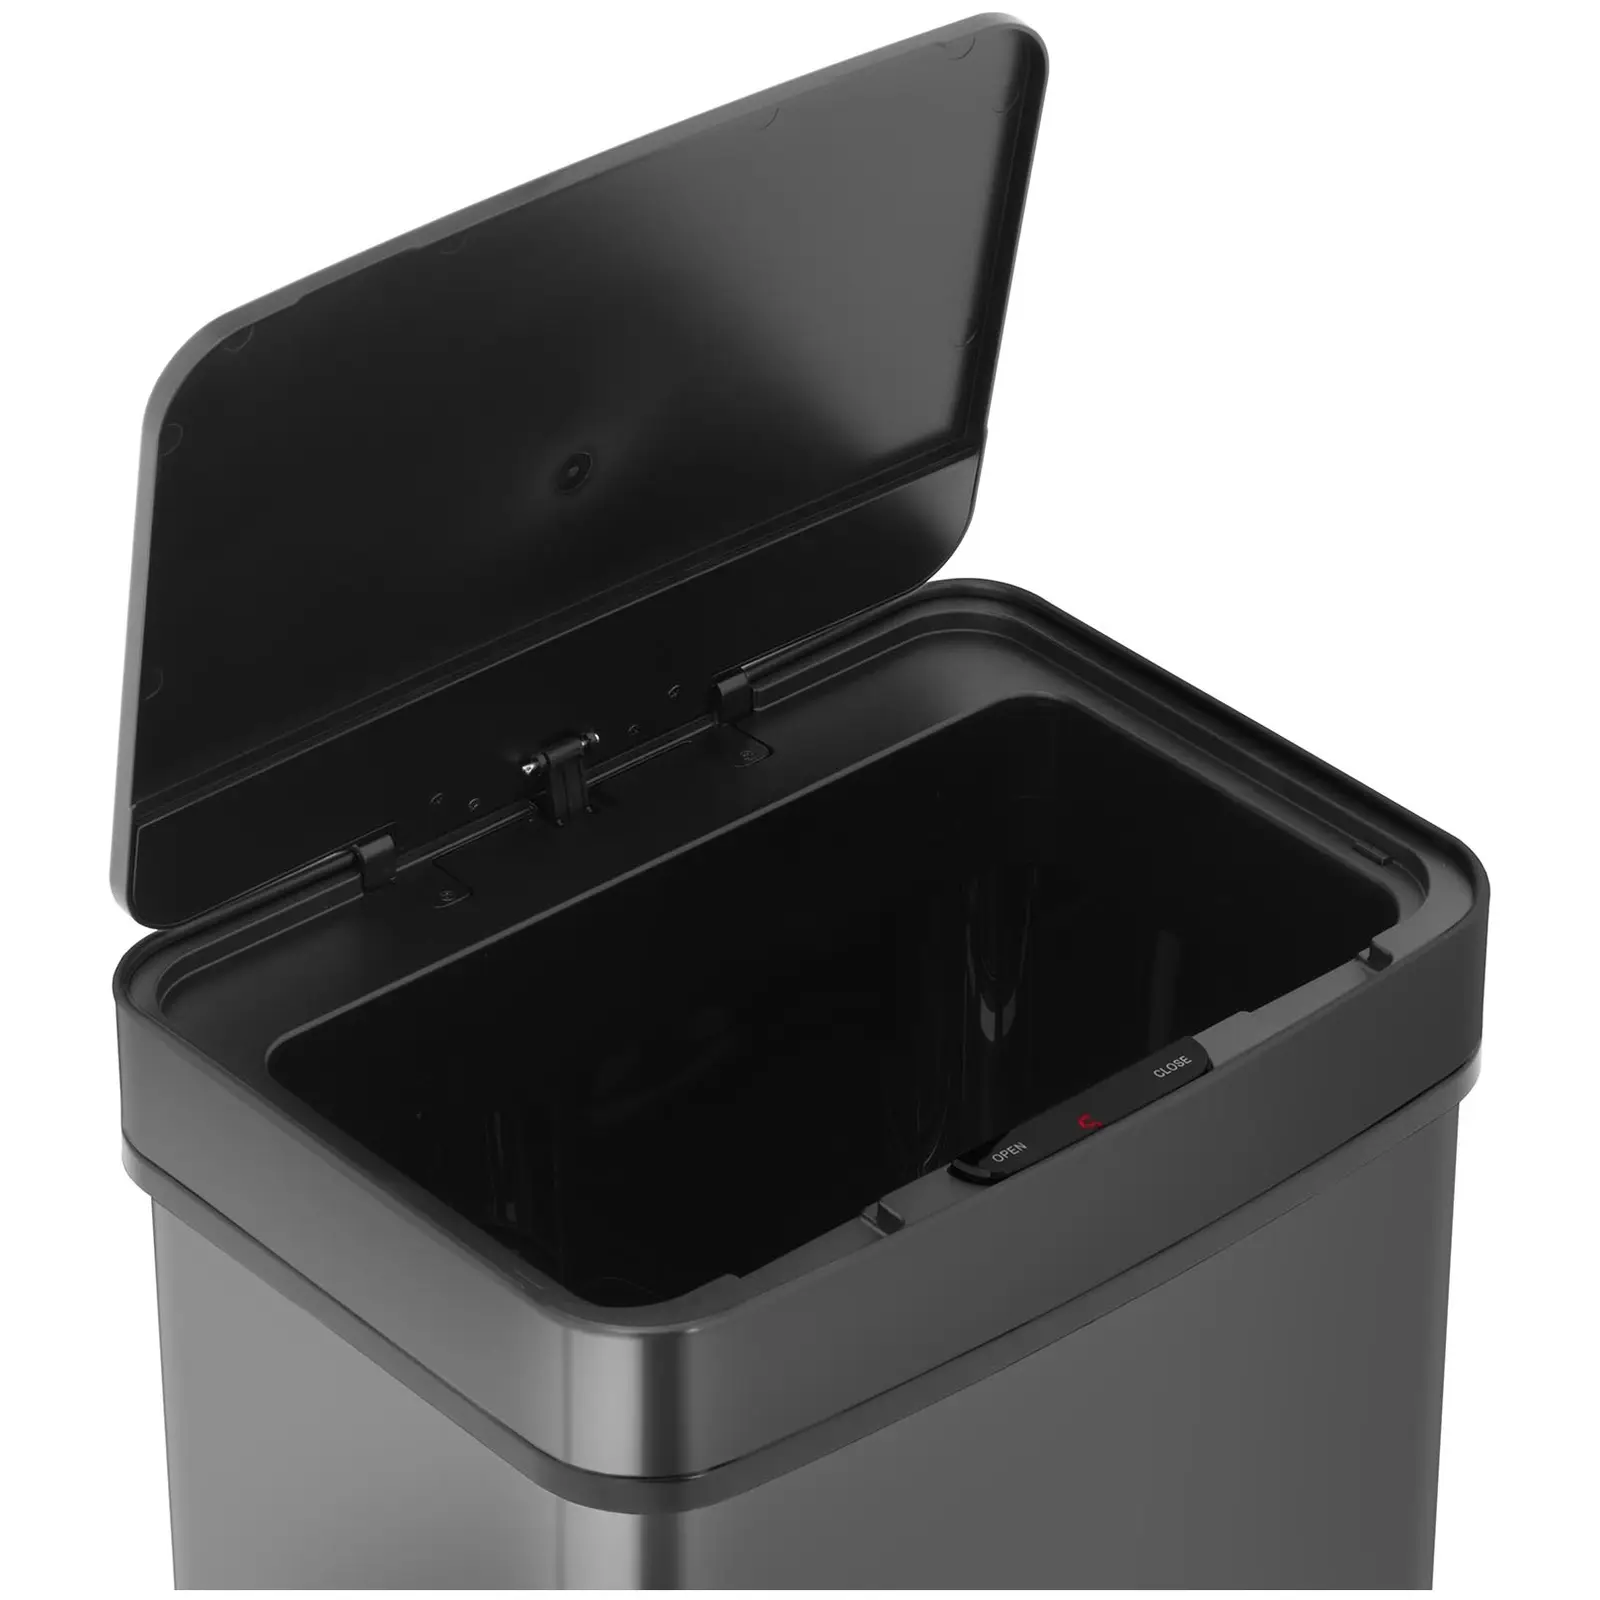 Bezdotykový odpadkový koš - 50 L - černý - hranatý